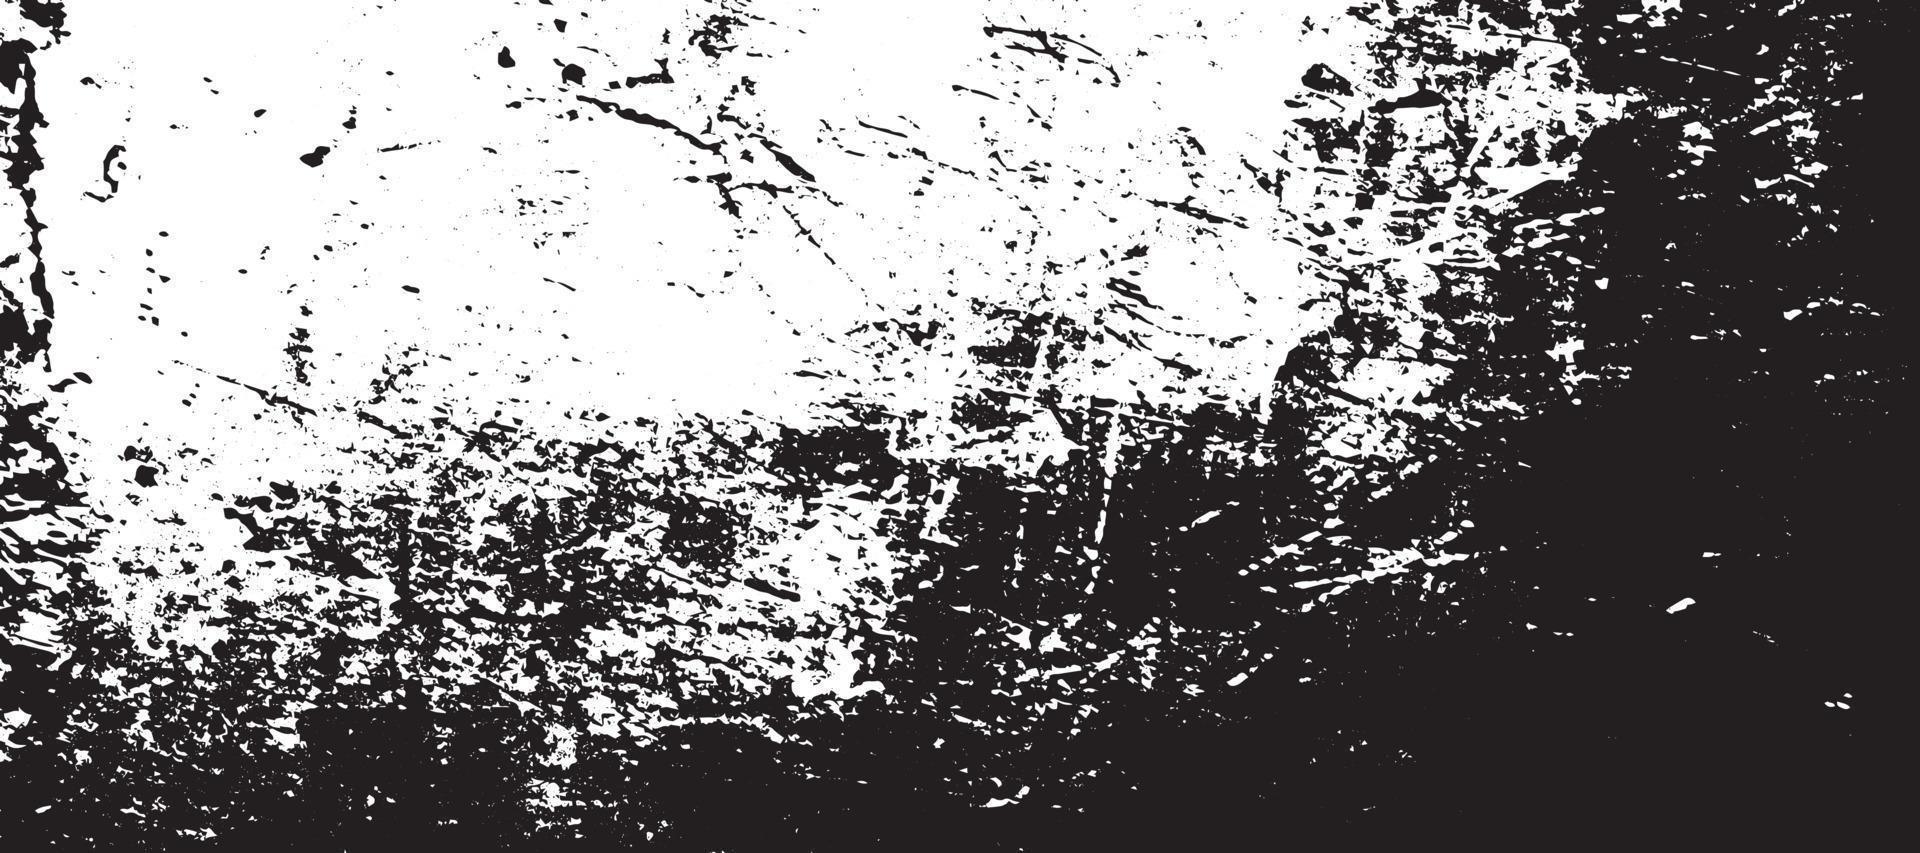 texture grunge noir et blanc. fond de superposition de détresse. texture de grain de poussière sur fond blanc. dessins et formes abstraits. ancien motif vintage usé. fond monochrome. texture granuleuse. vecteur